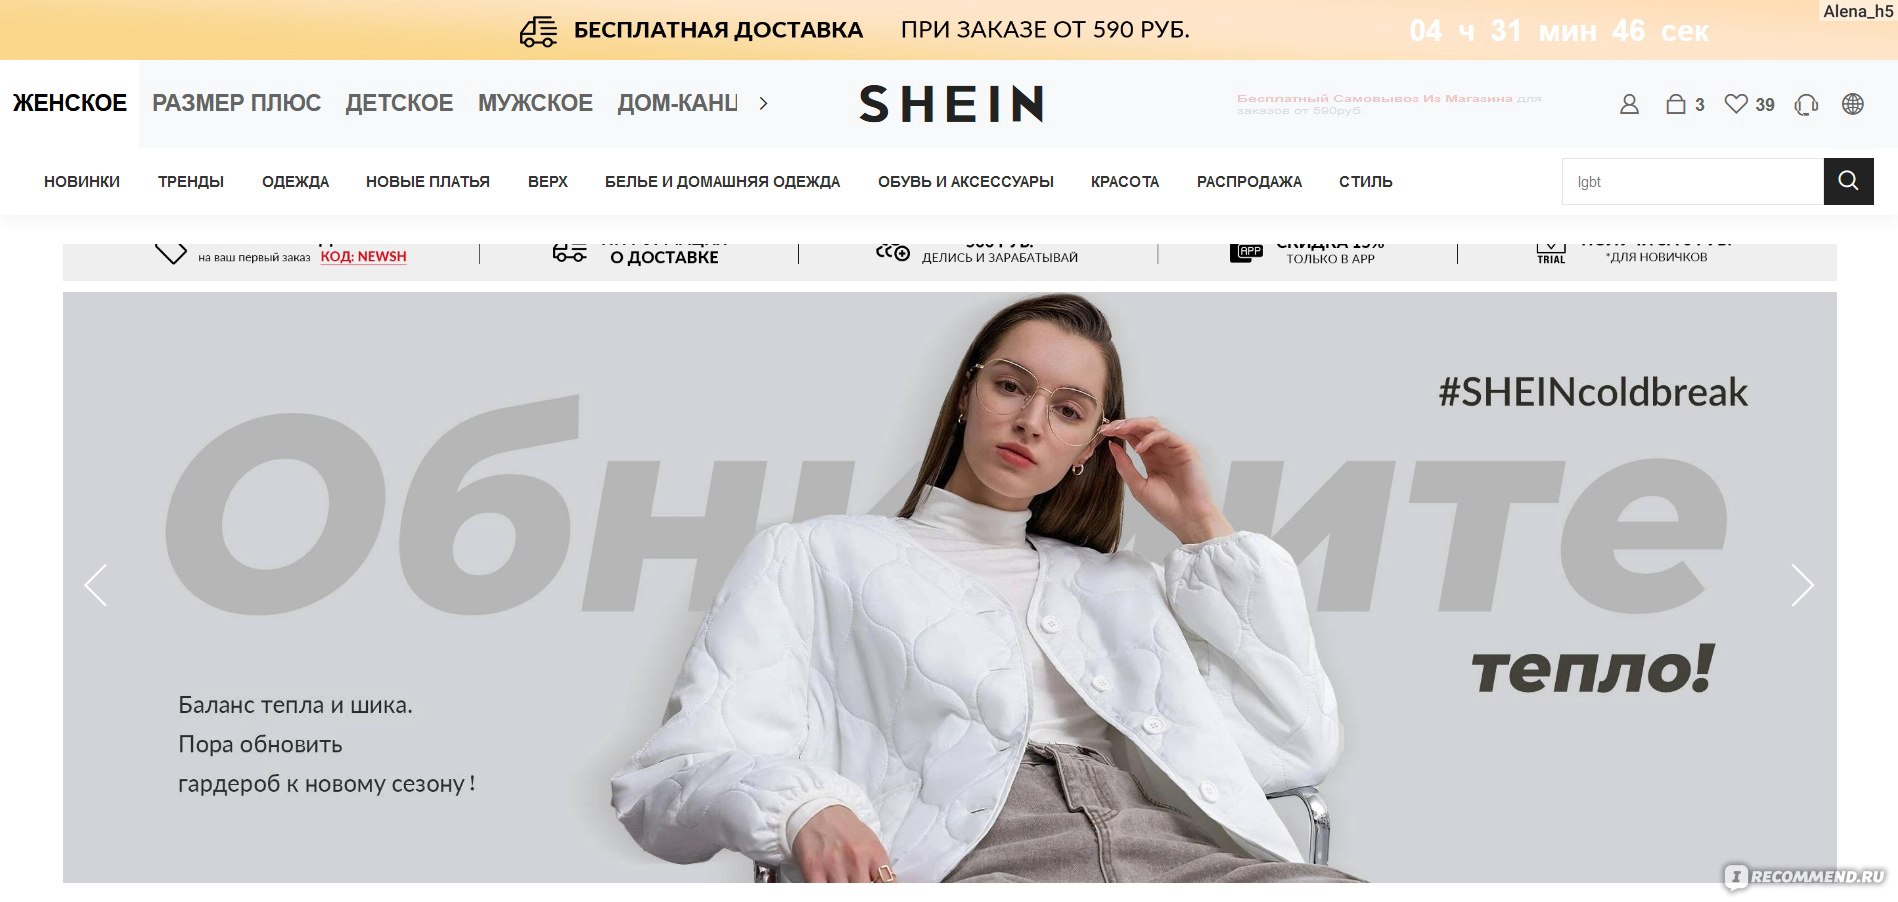 Сайт одежды com. SHEIN интернет магазин. Шеин интернет магазин одежды. Интернет магазины по типу SHEIN. SHEIN отзывы.